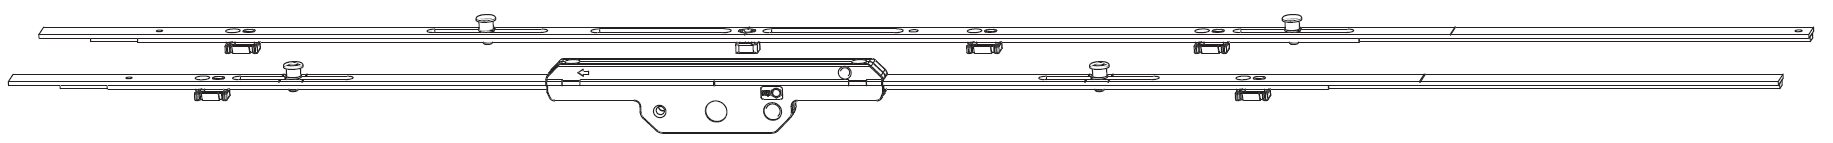 MAICO - Kit Cremonese RAIL-SYSTEMS per anta scorrevole altezza maniglia fissa prolungabile senza dss - gr / dim. 02 - entrata 17,5 - alt. man. 450 - lbb/hbb 1101 - 1300